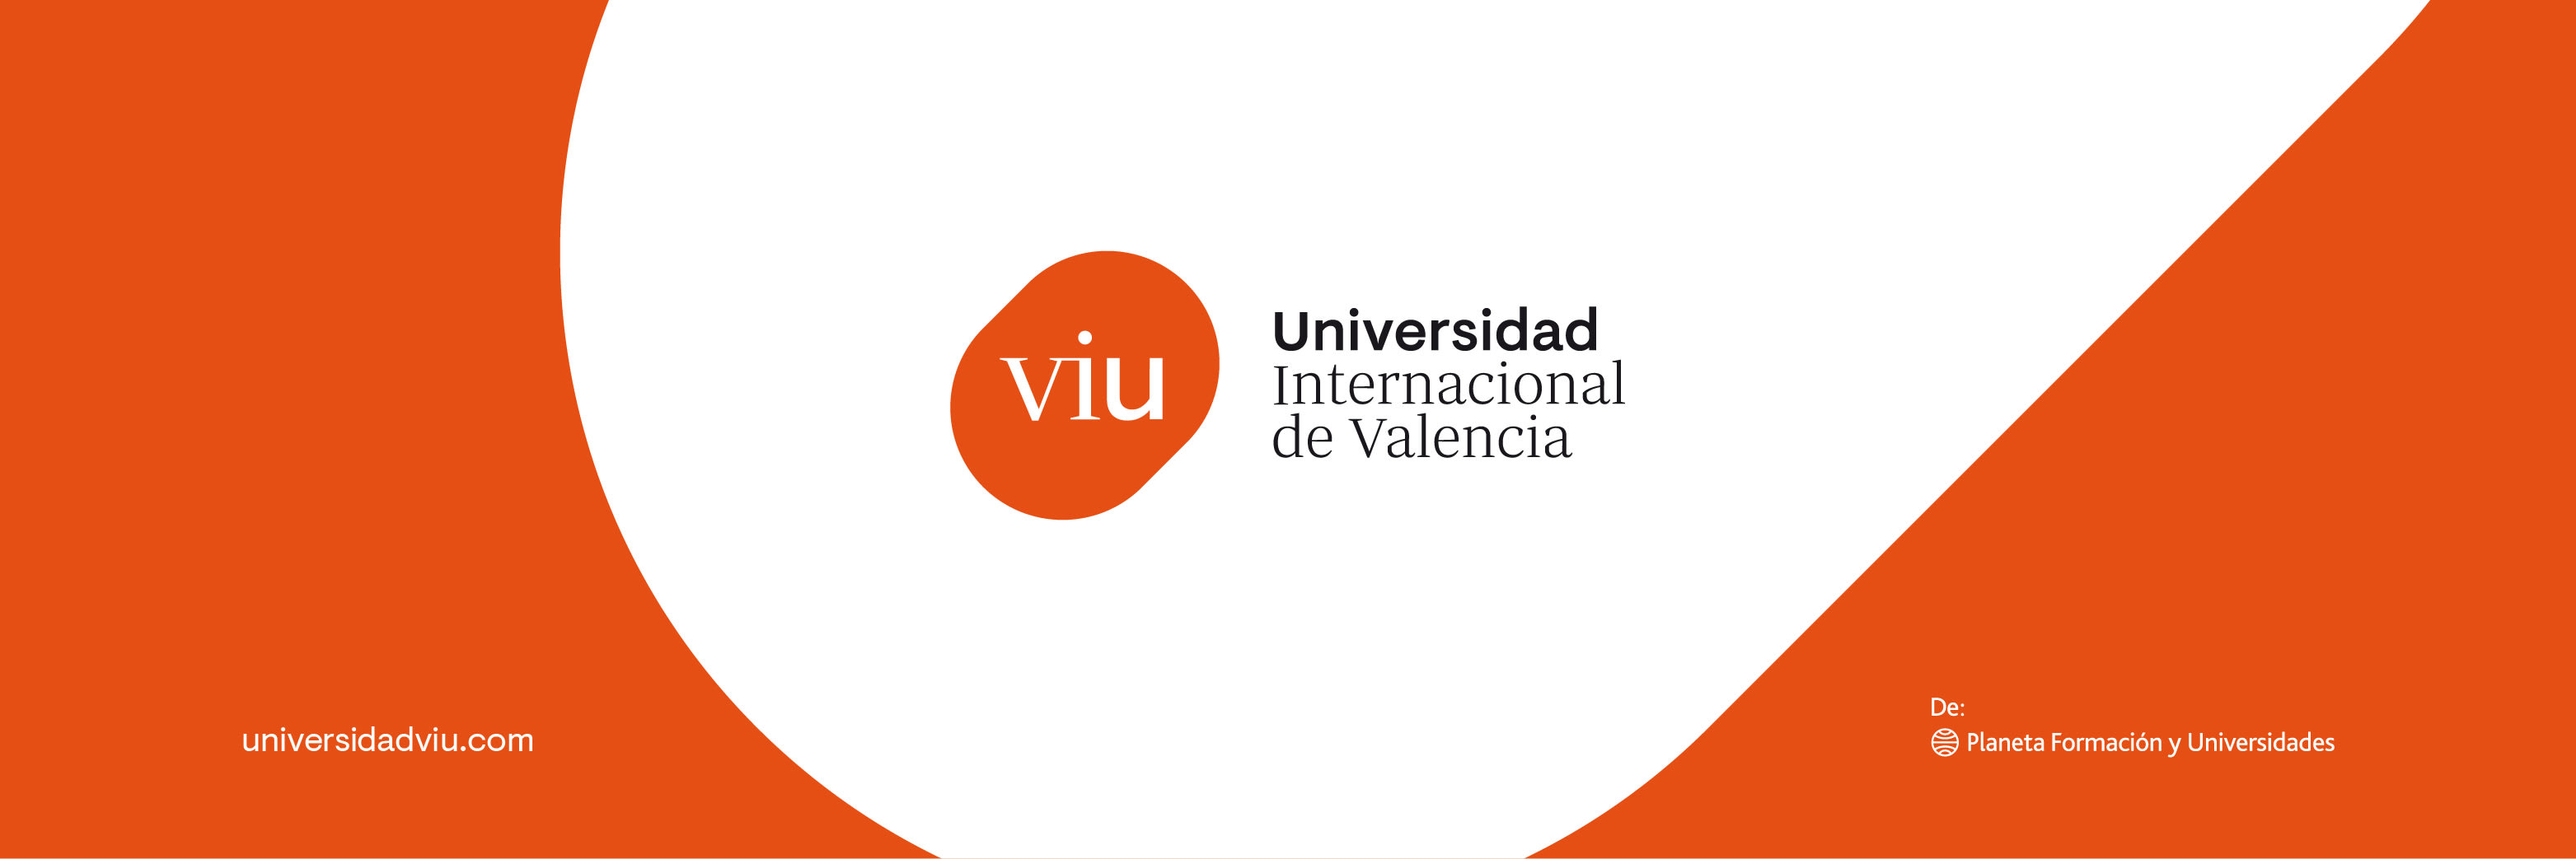 Viu - Universidad Internacional De Valencia In Spain - Master Degrees